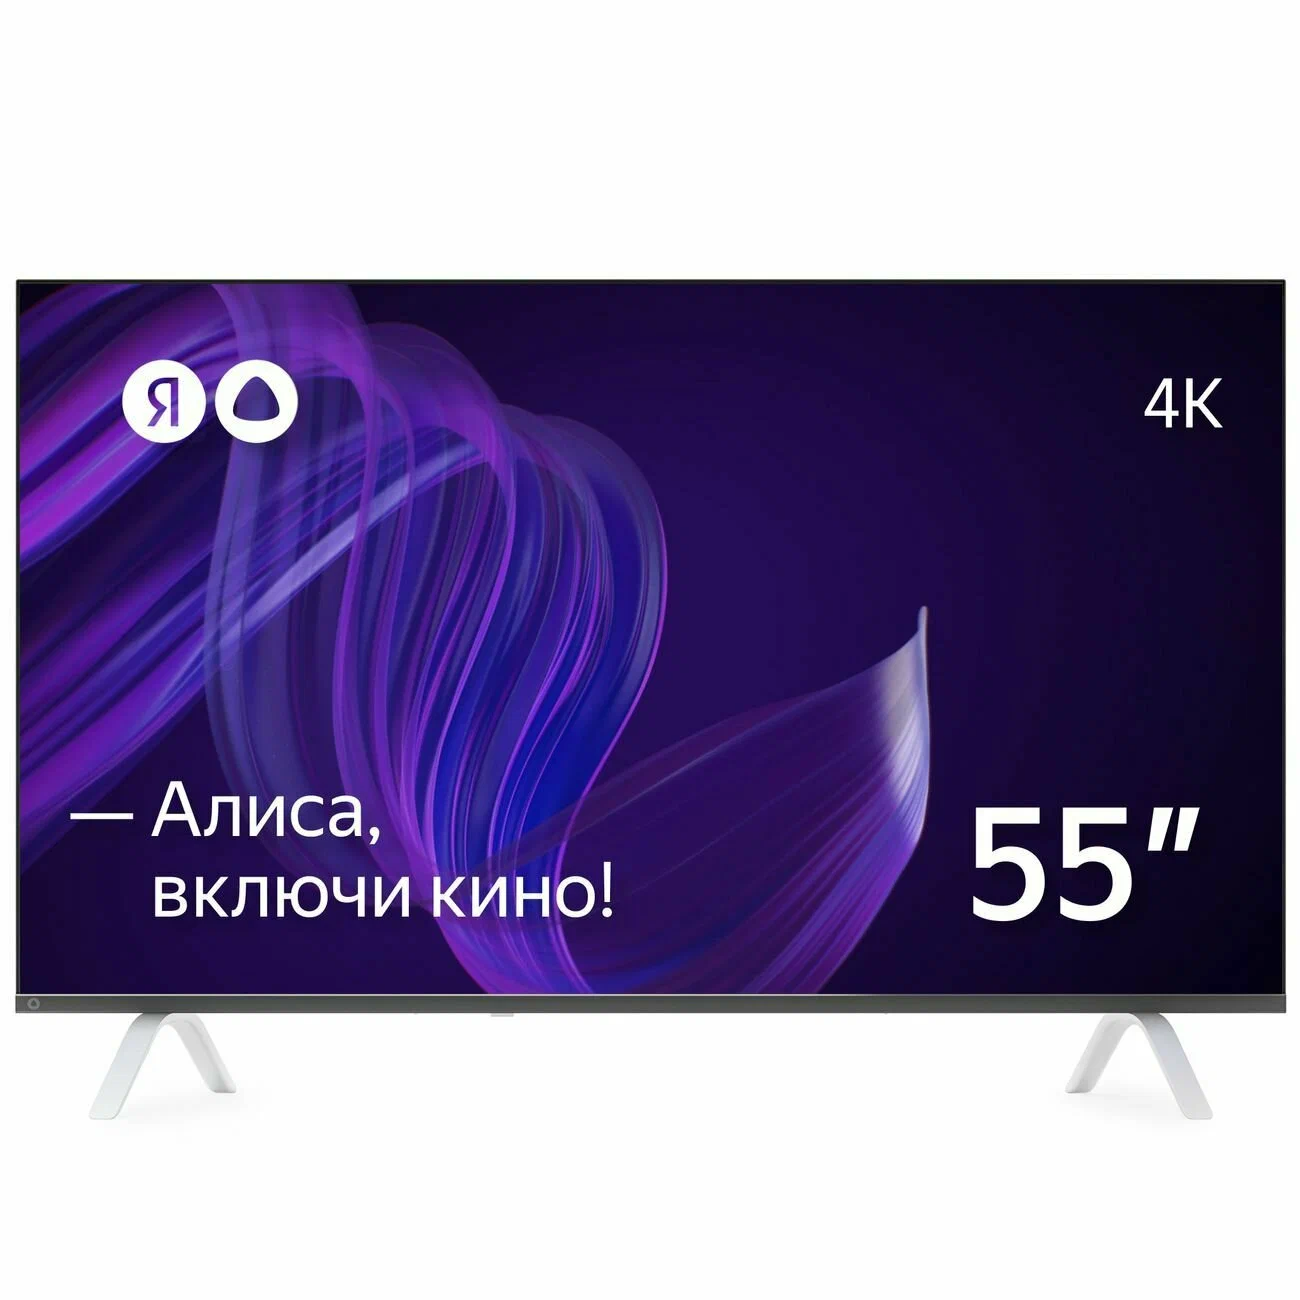 Фото товара: Телевизор 55" Яндекс YNDX-00073 с Алисой black